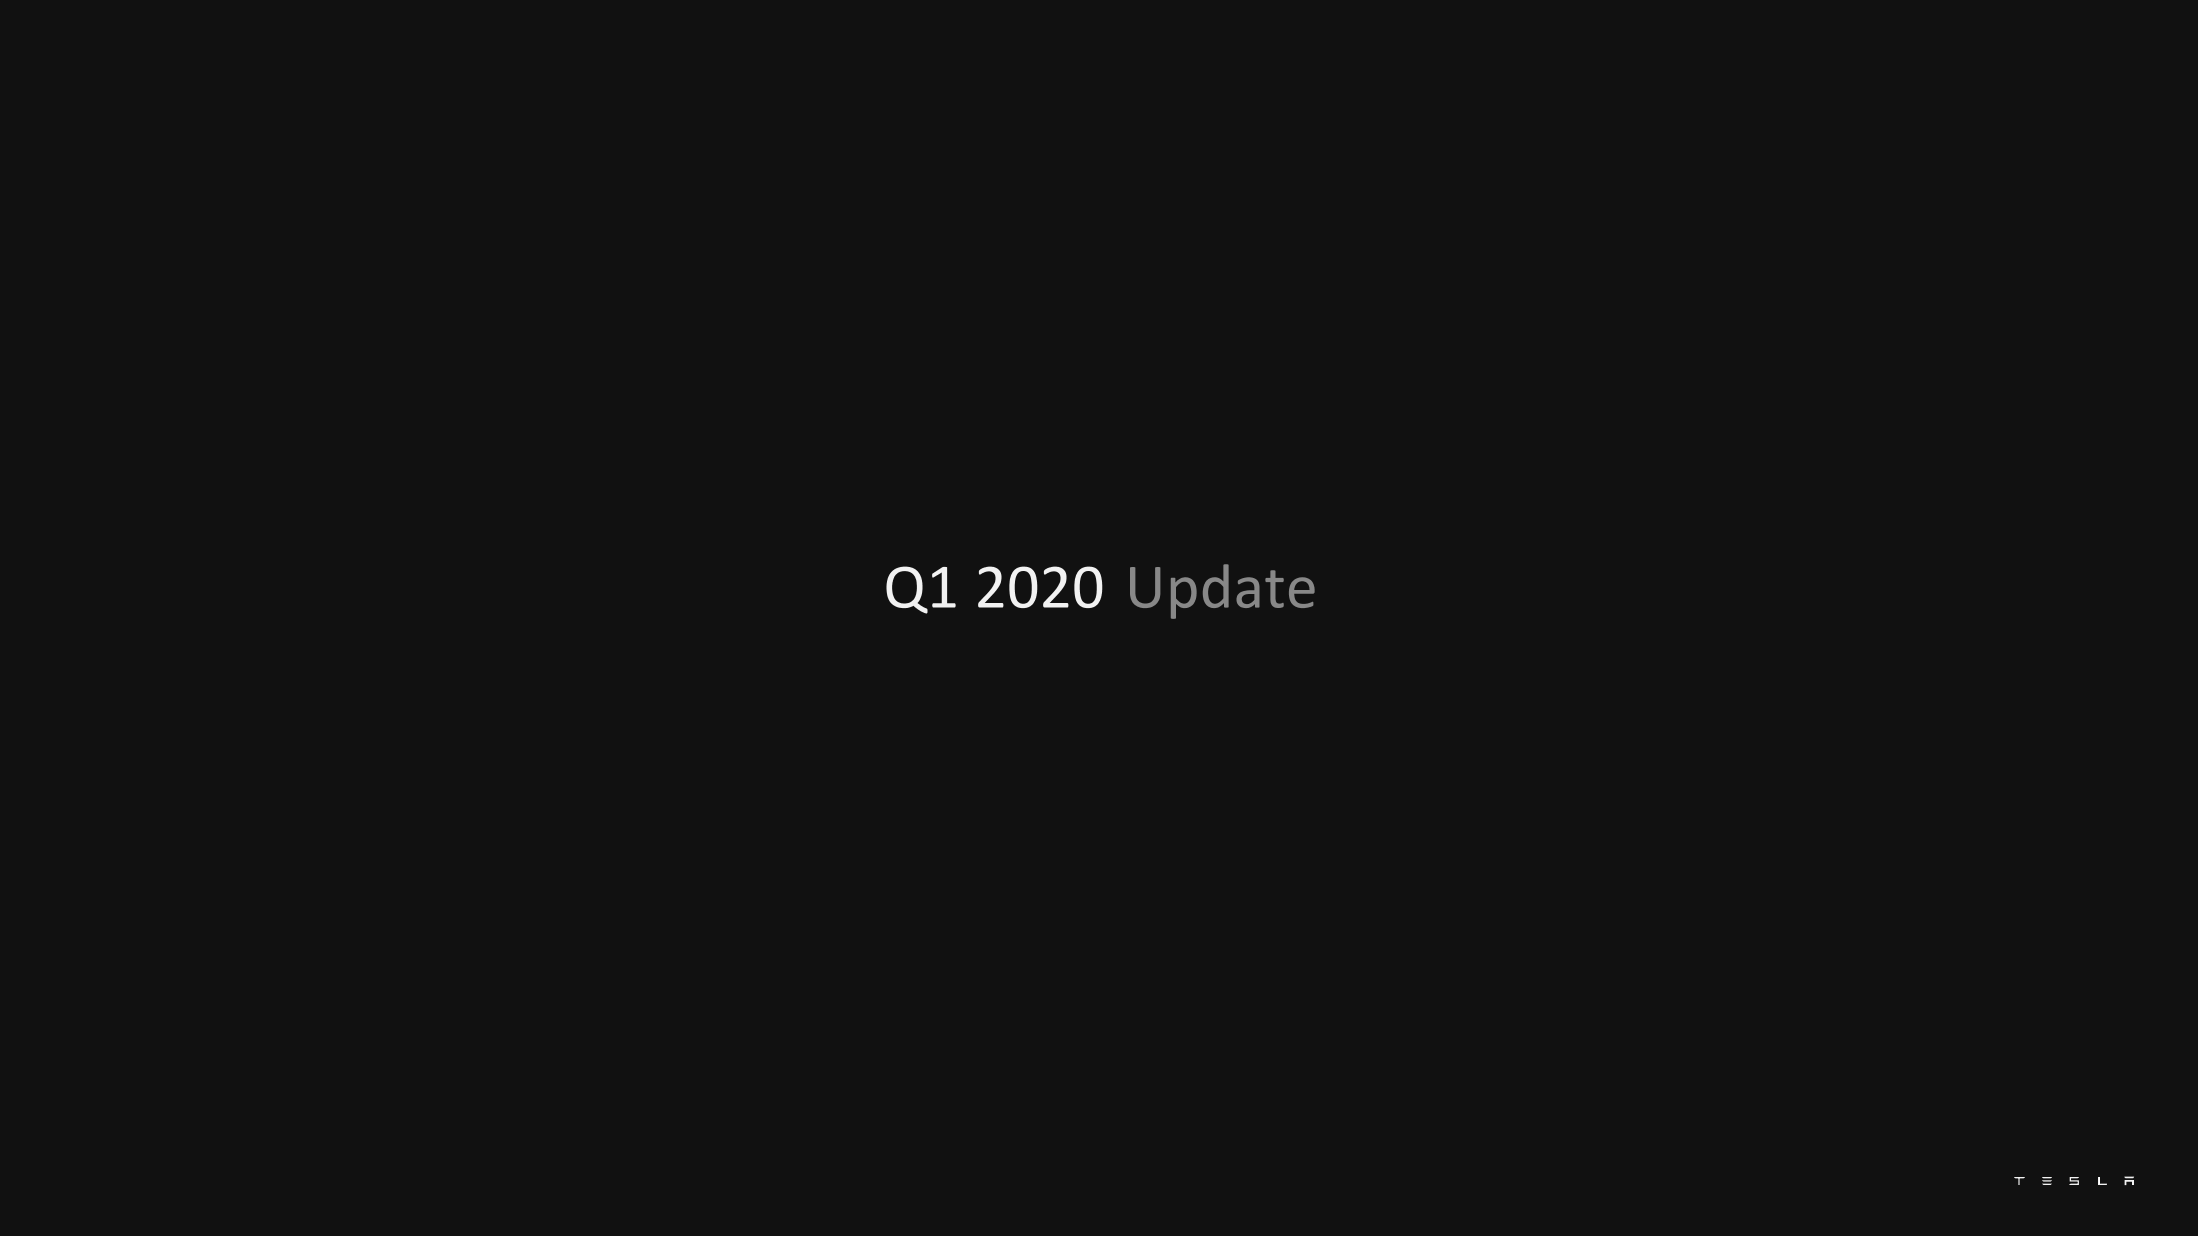 2020年Q1特斯拉财报_PPT（英文）-2020.5-25页2020年Q1特斯拉财报_PPT（英文）-2020.5-25页_1.png